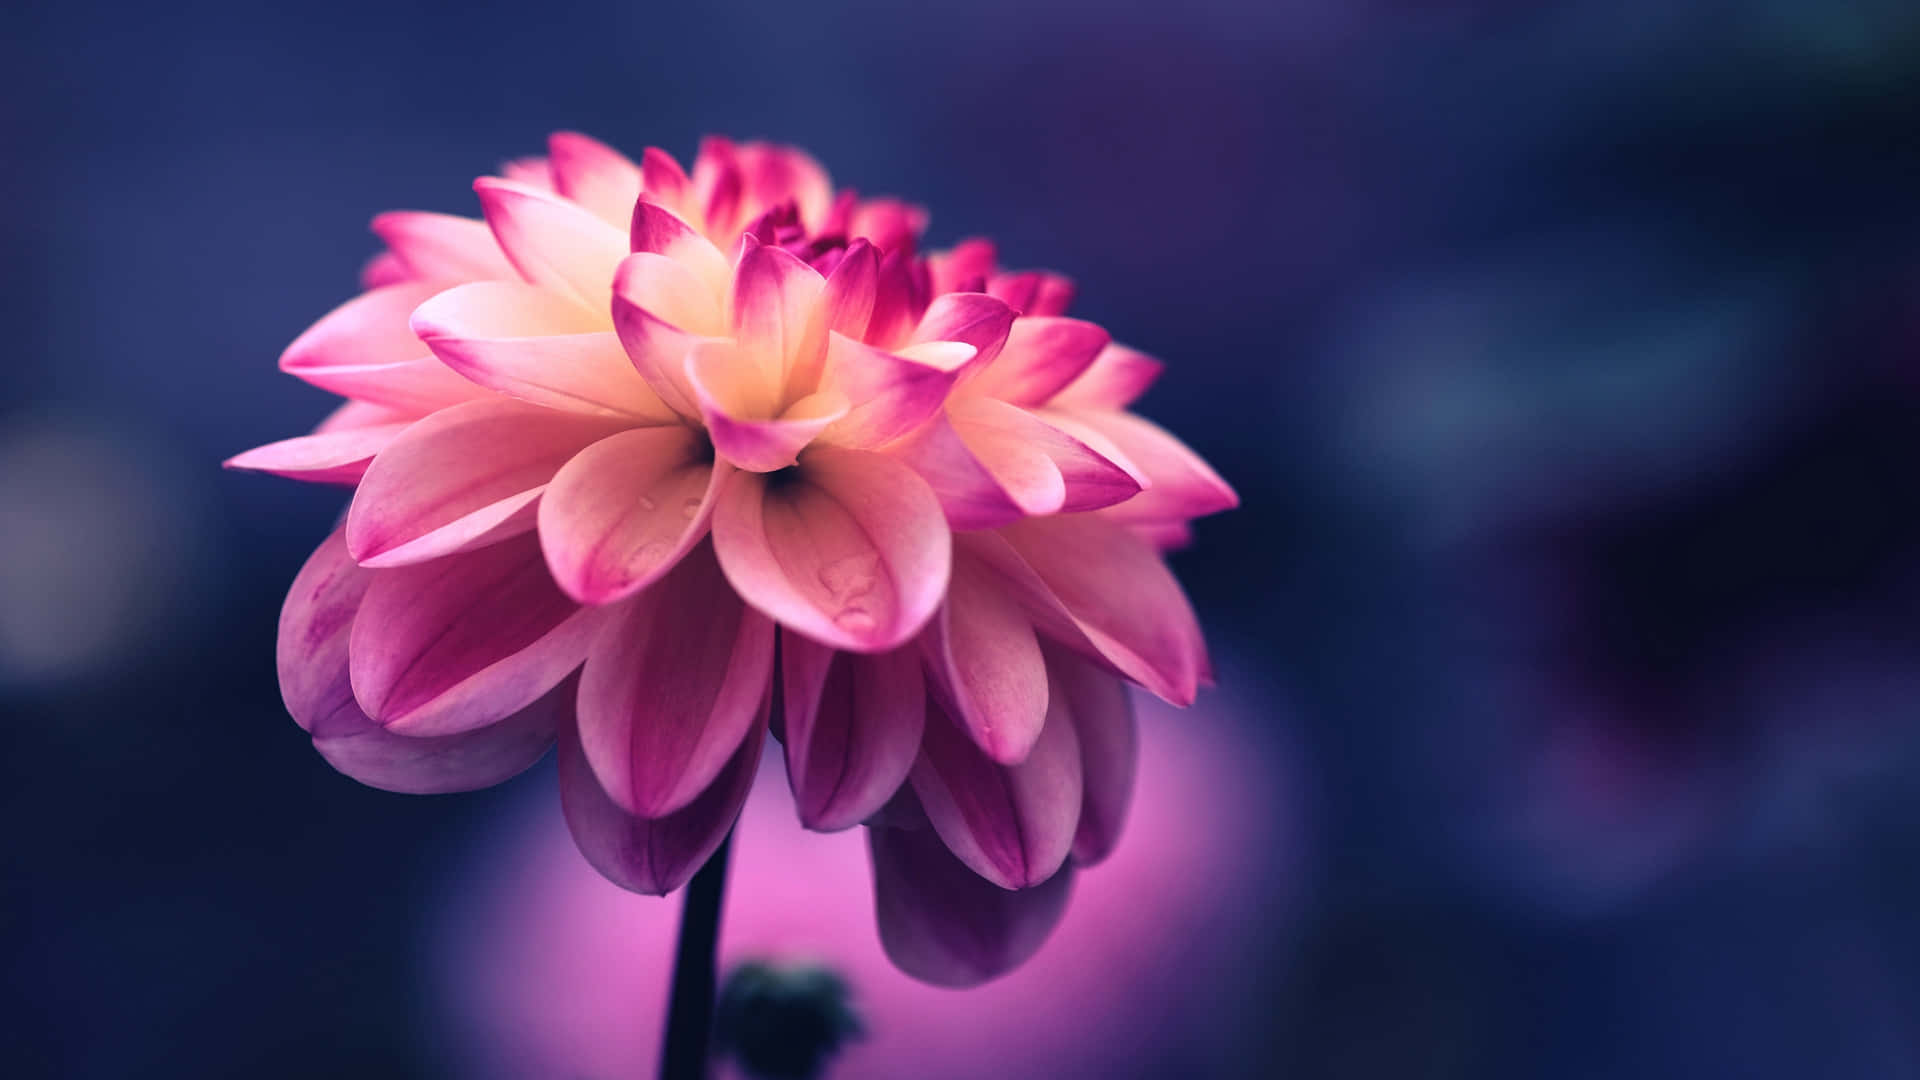 Download Close-up Pink Dahlia Flower Blue Background Wallpaper: Hình nền Hoa Đahlia màu hồng nền xanh gần cận này sẽ mang lại cho bạn một không gian làm việc sinh động và ngọt ngào. Hãy tải ngay hình ảnh này để thư giãn và tìm năng lượng mới cho công việc của mình.Đừng quên xem ngay hình ảnh liên quan đến từ khóa này.